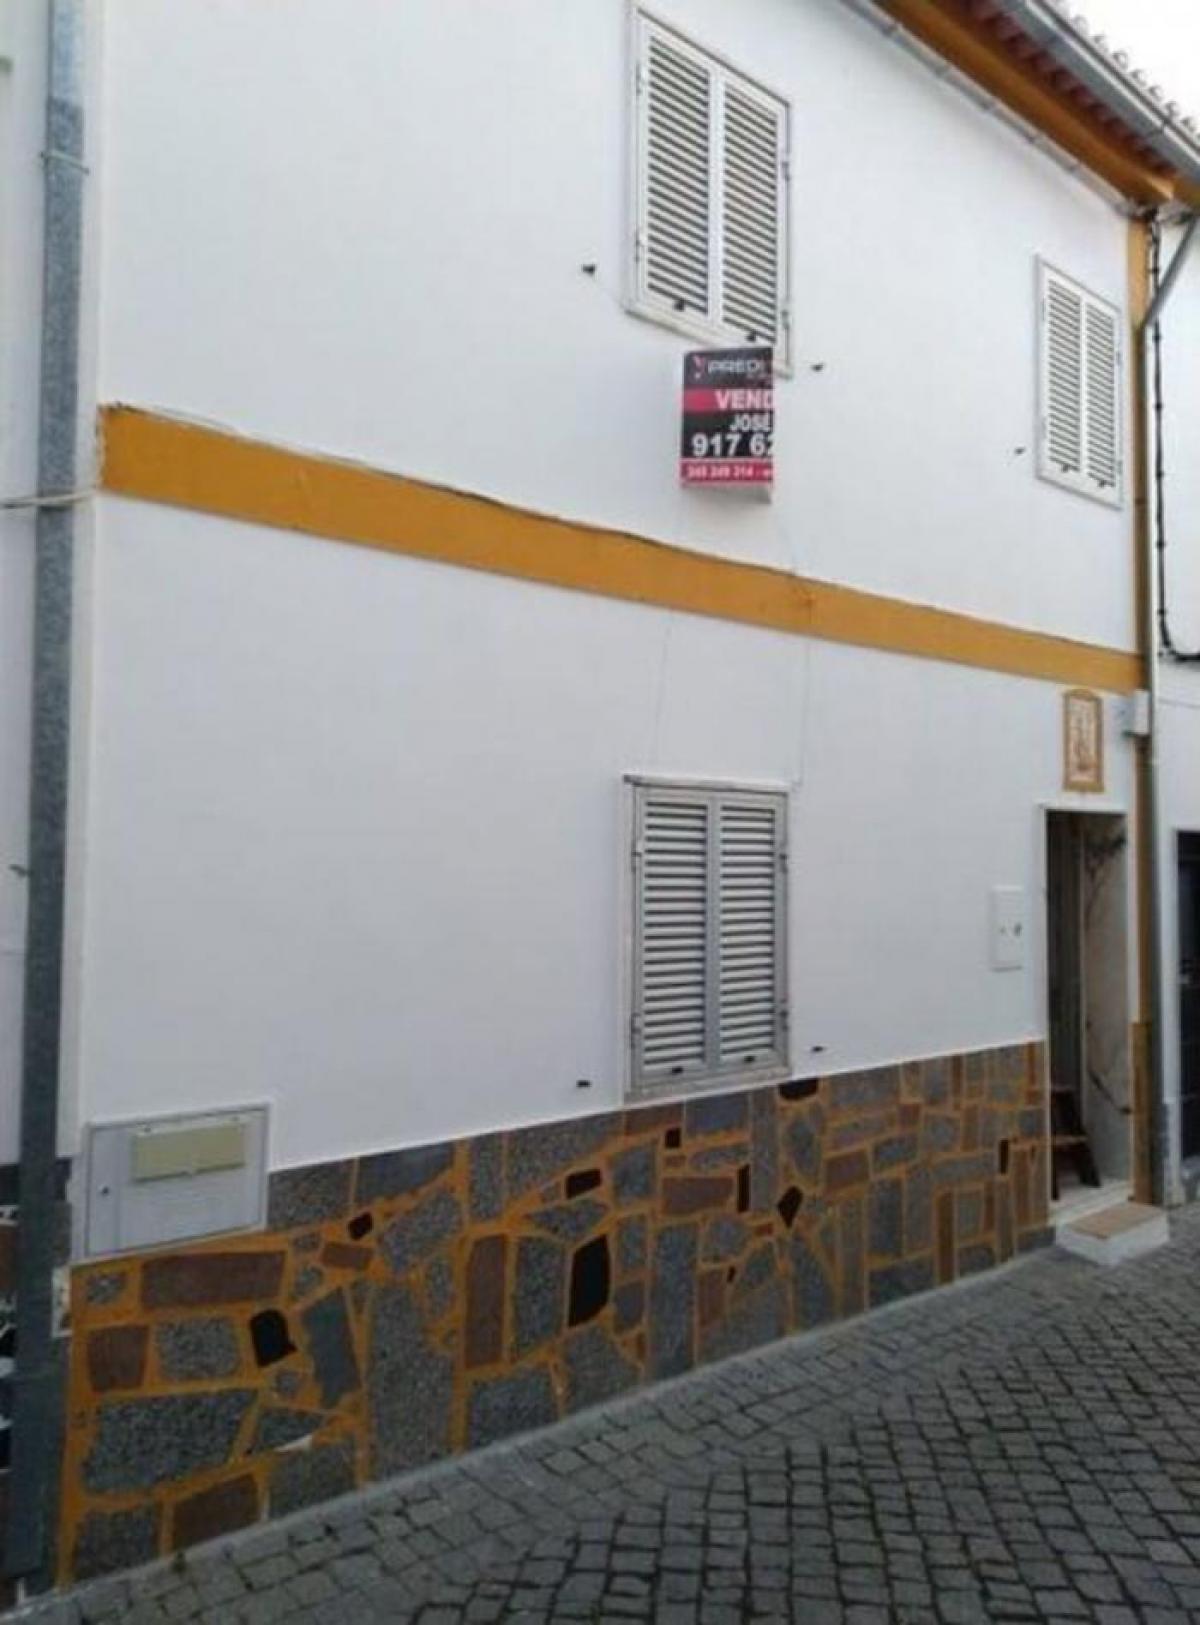 Picture of Home For Sale in Crato, Alentejo, Portugal